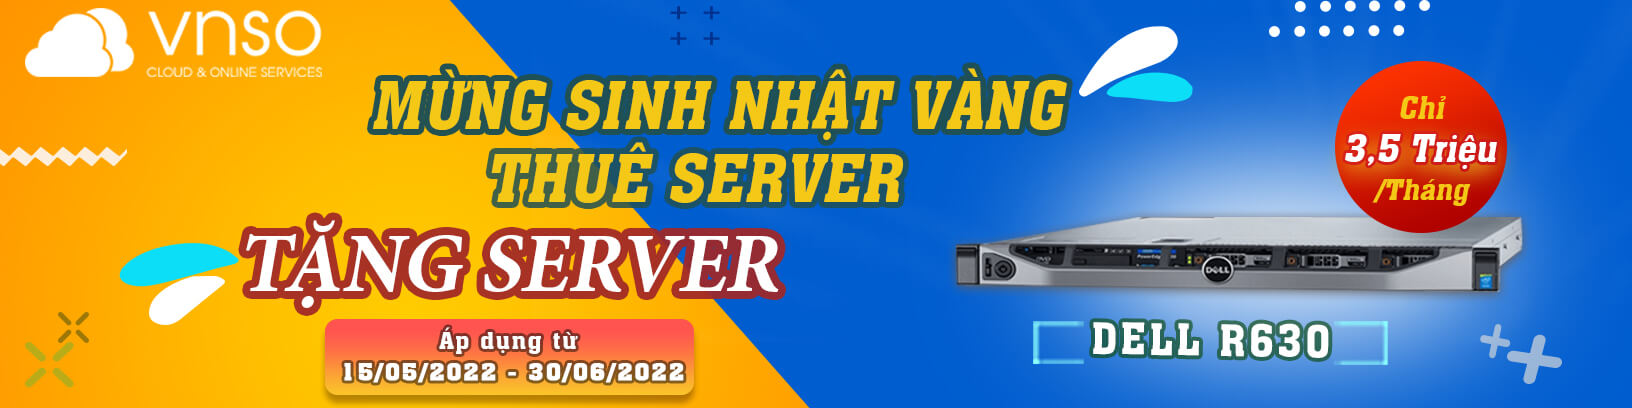 thuê máy chủ, thuê server, thuê vps giá rẻ, Thuê hosting giá rẻ